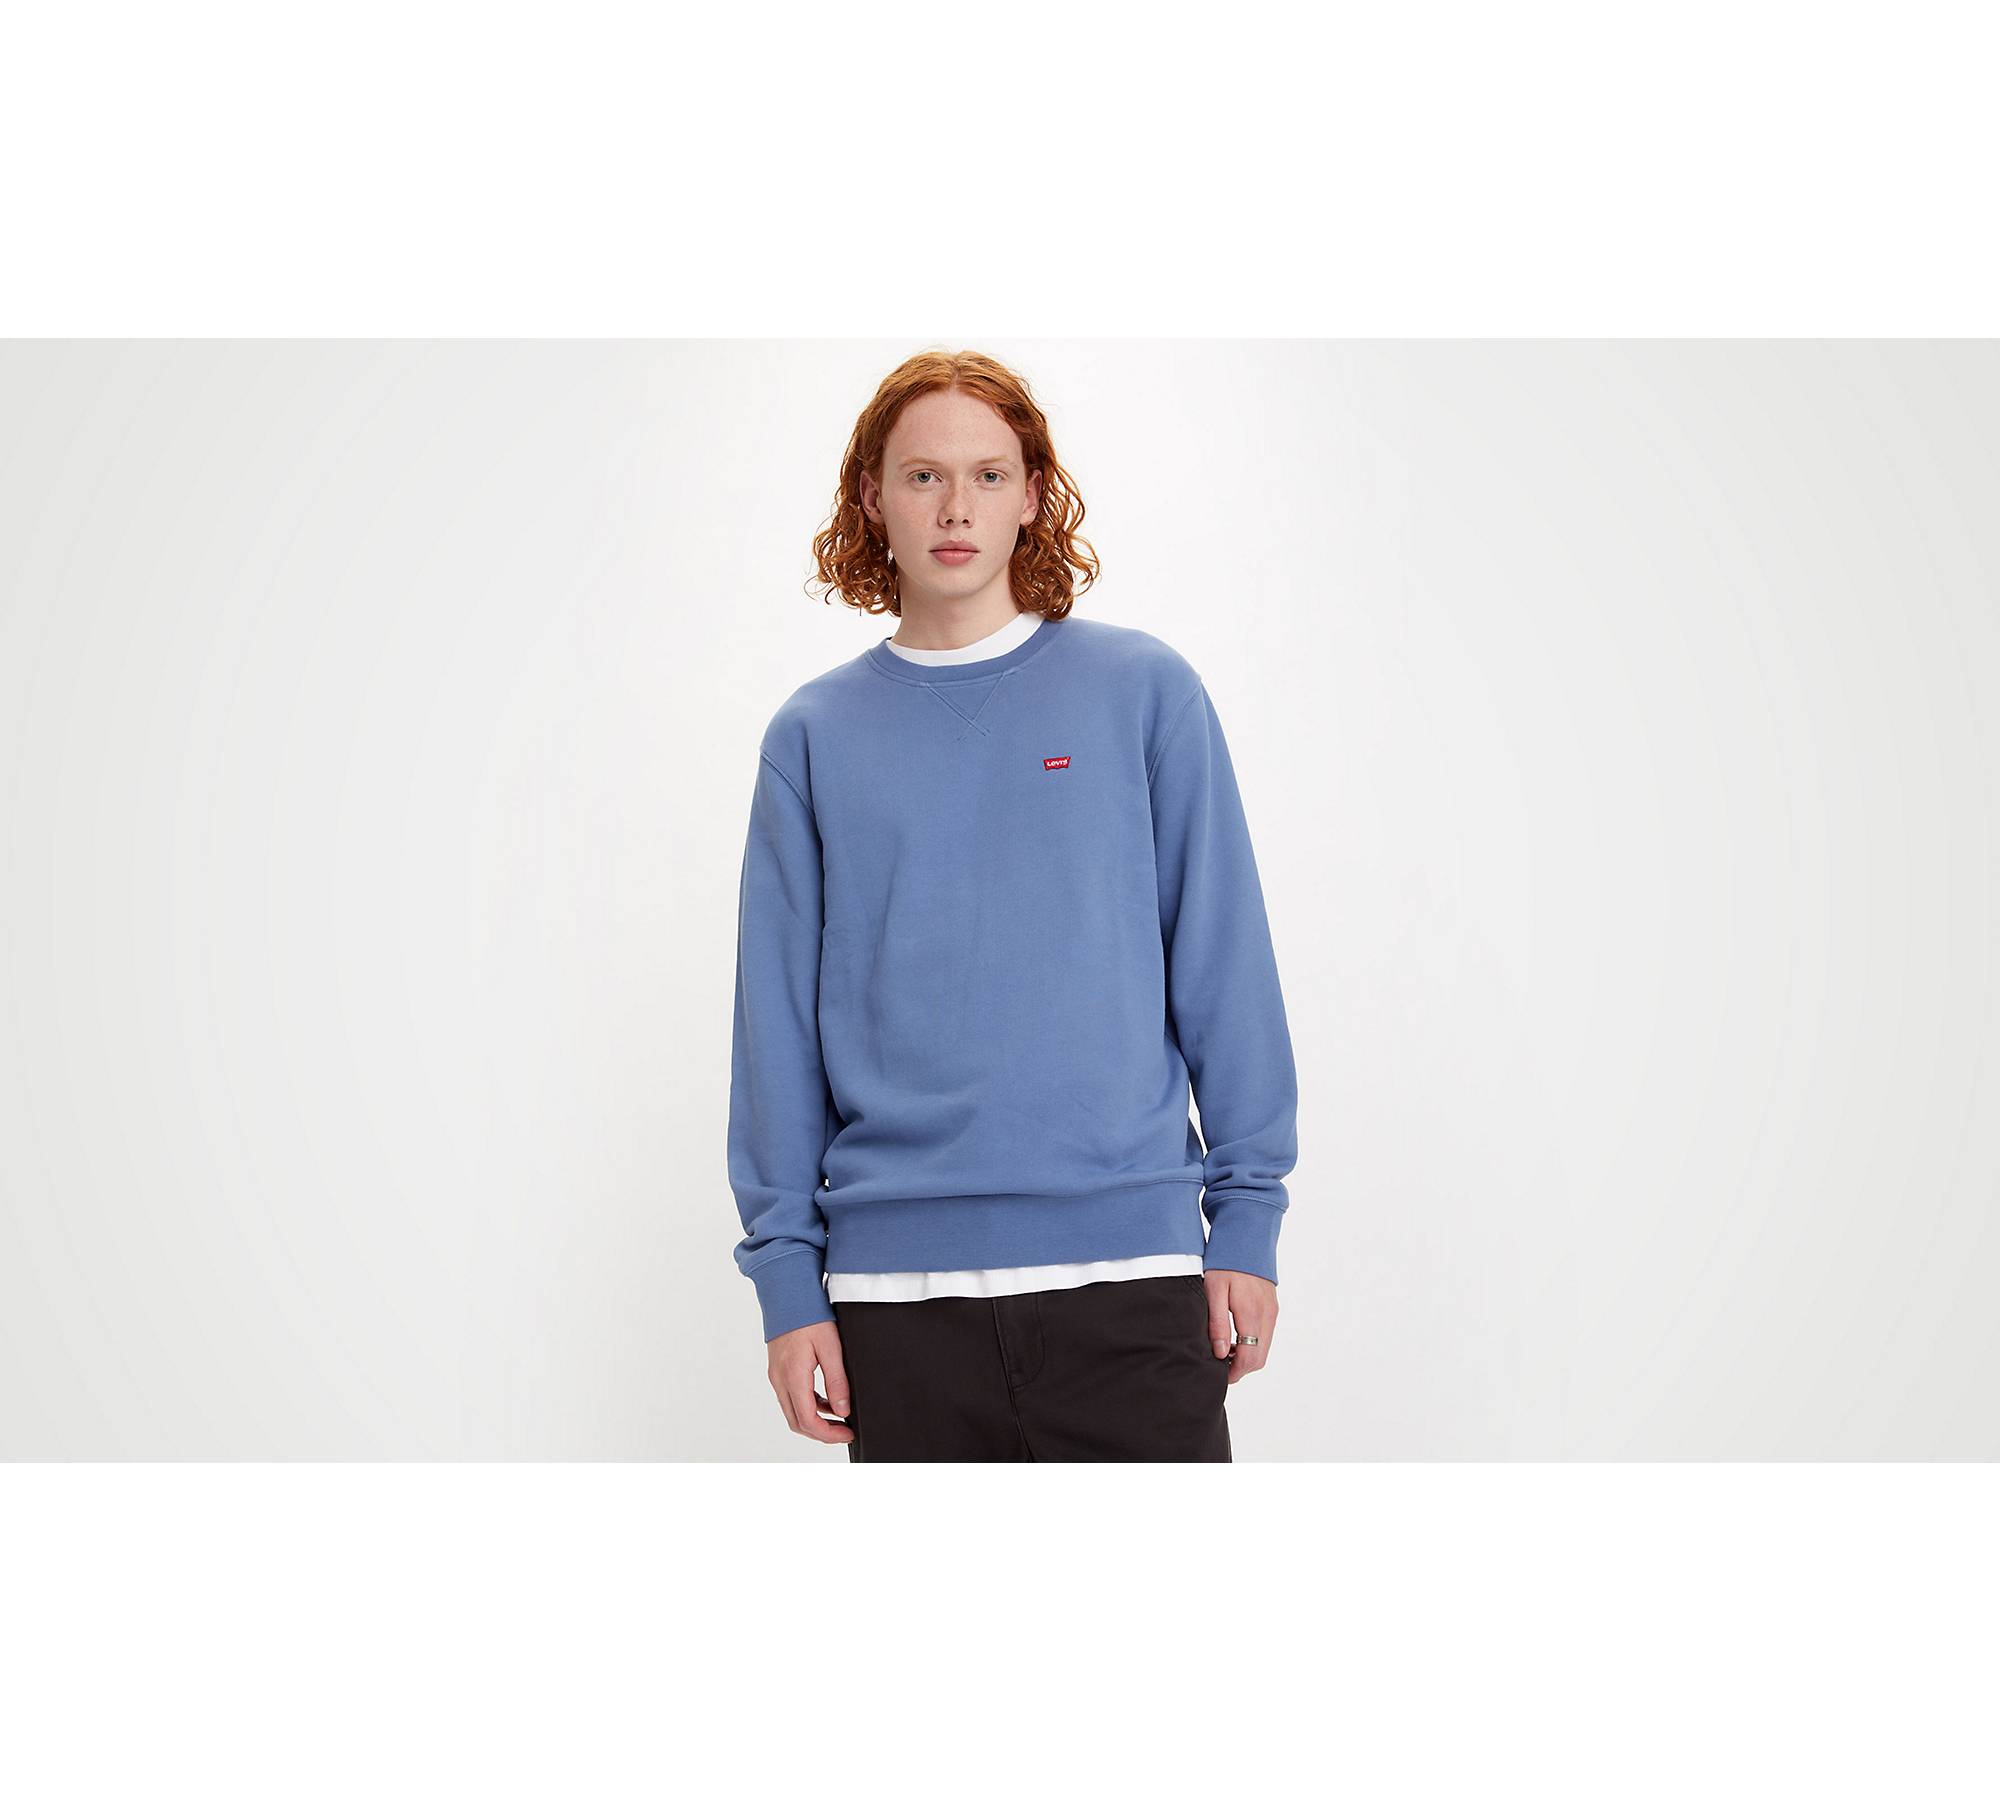 gebruiker Intact beoefenaar Nieuw Original Sweatshirt Ronde Hals - Blauw | Levi's® NL